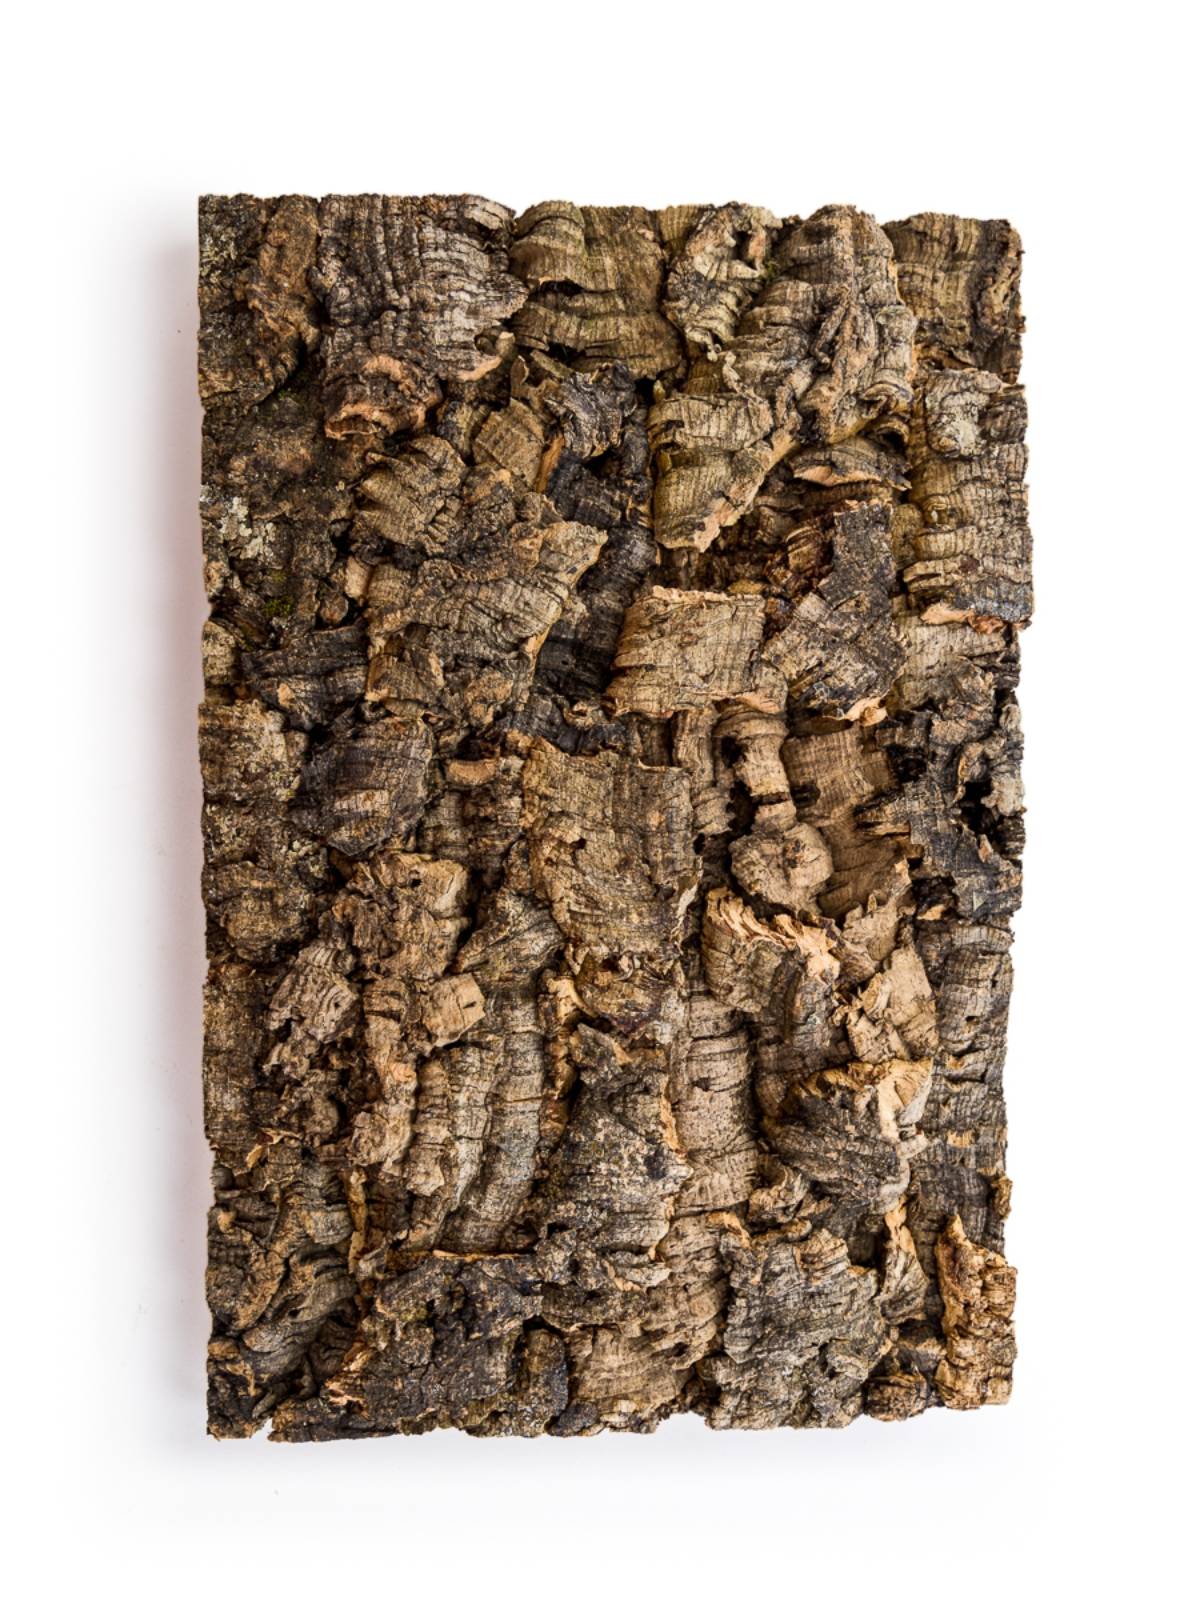 Natural Cork Sheet - 1/8 Thick, 12 x 18